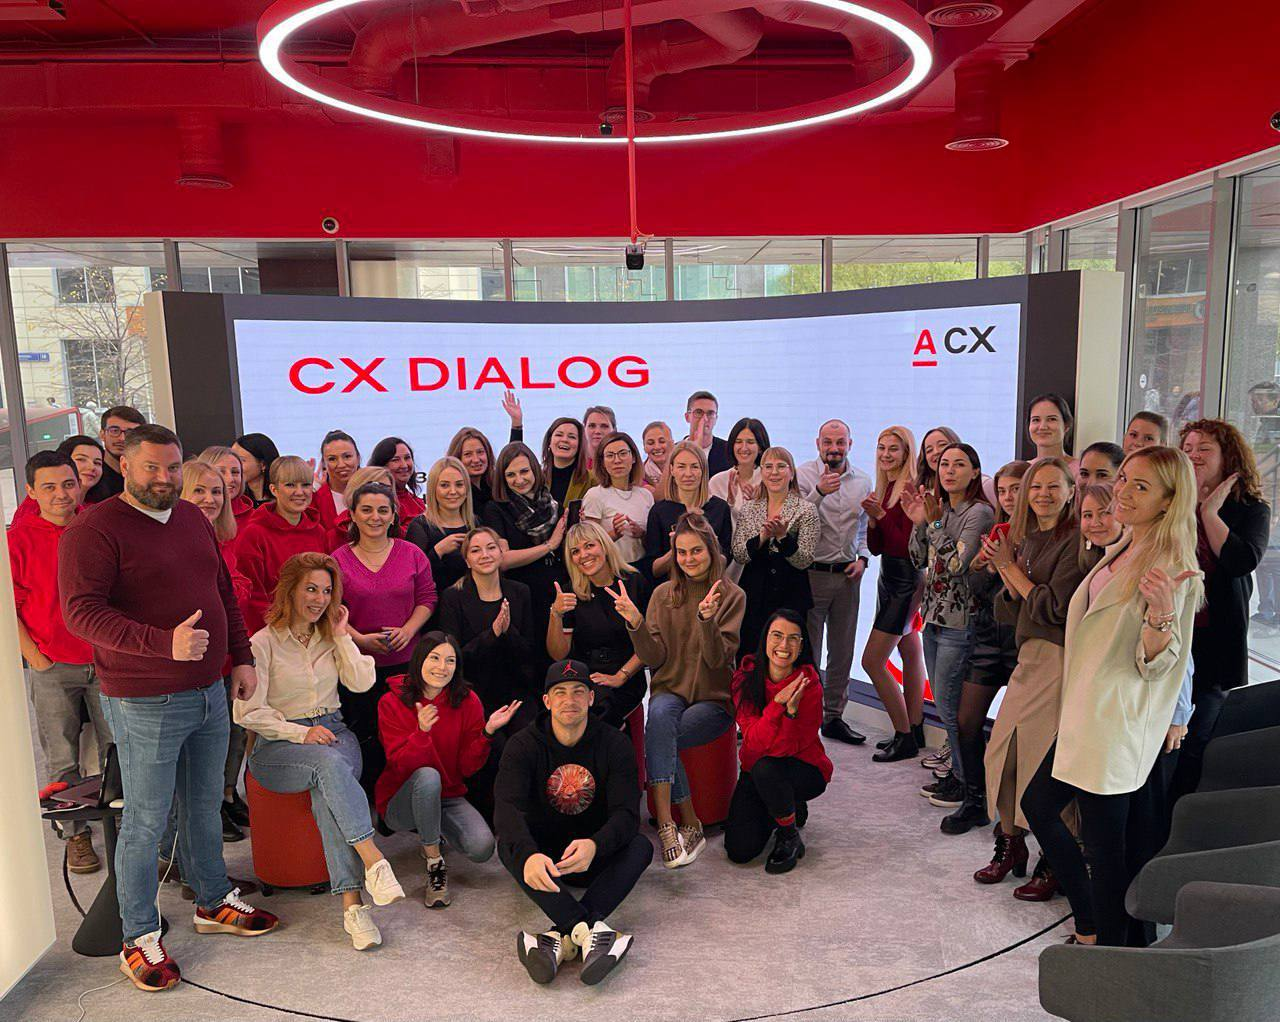 CX Dialog — ежеквартальные встречи, где сотрудники банка обсуждают клиентский опыт